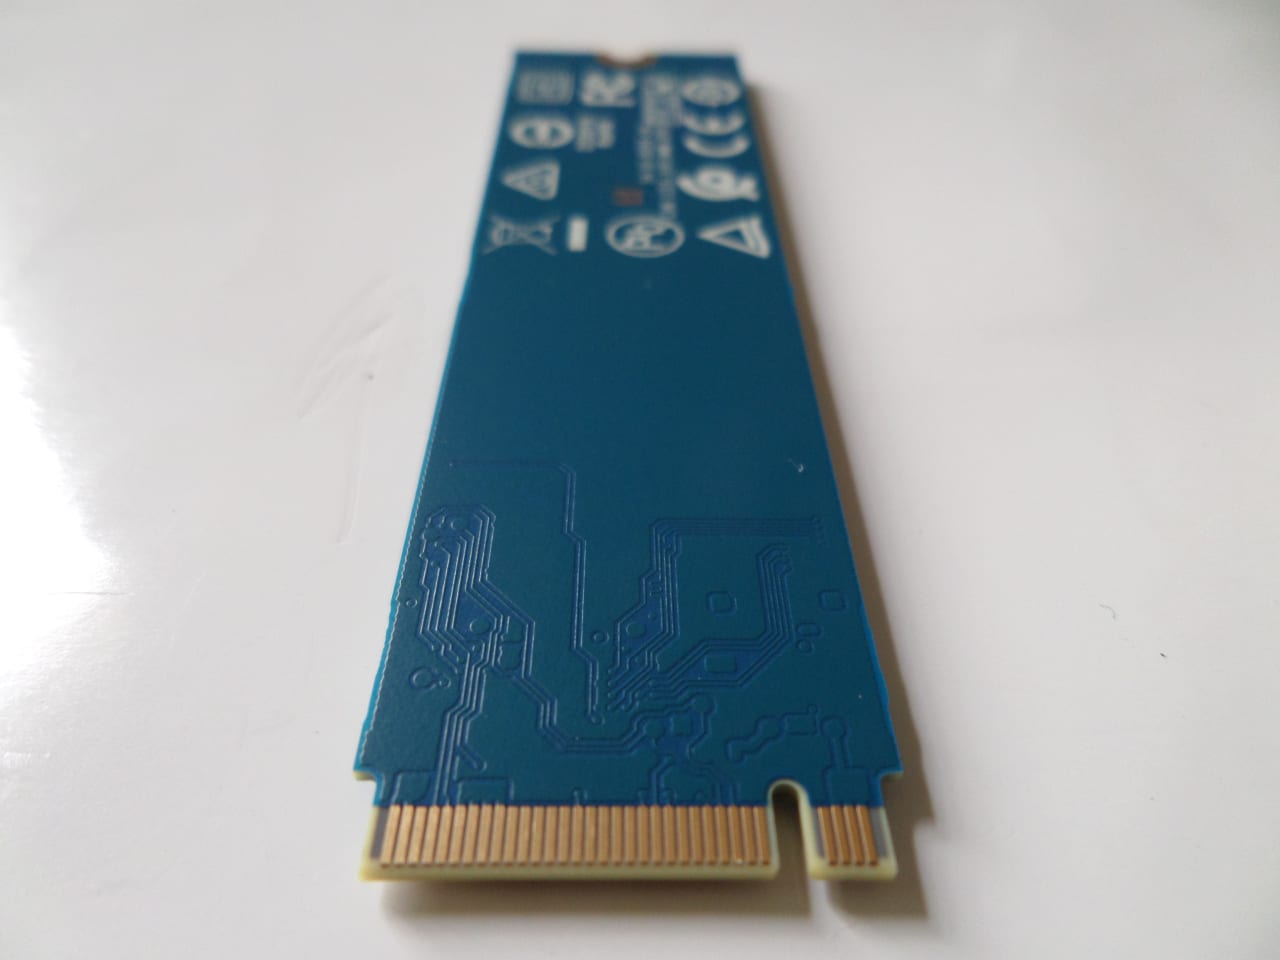 WD Blue NVMe SSD - underside